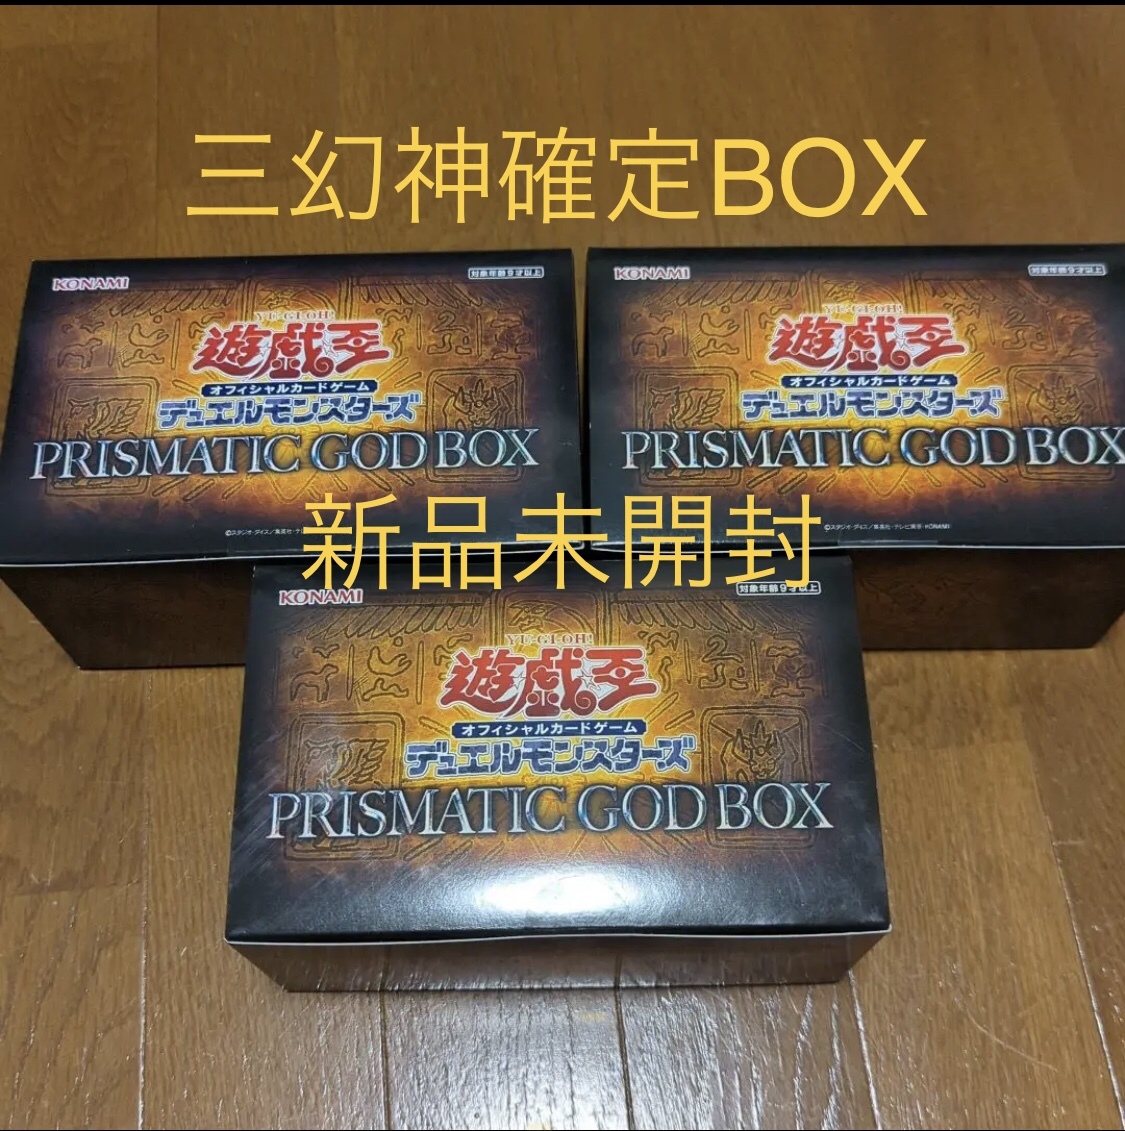 遊戯王 PRISMATIC GOD BOX プリズティックゴッドボックス 三幻神 確定 新品未開封 3個セット オベリスク ラー 究極竜騎士 日本最大級 オシリス 日本限定